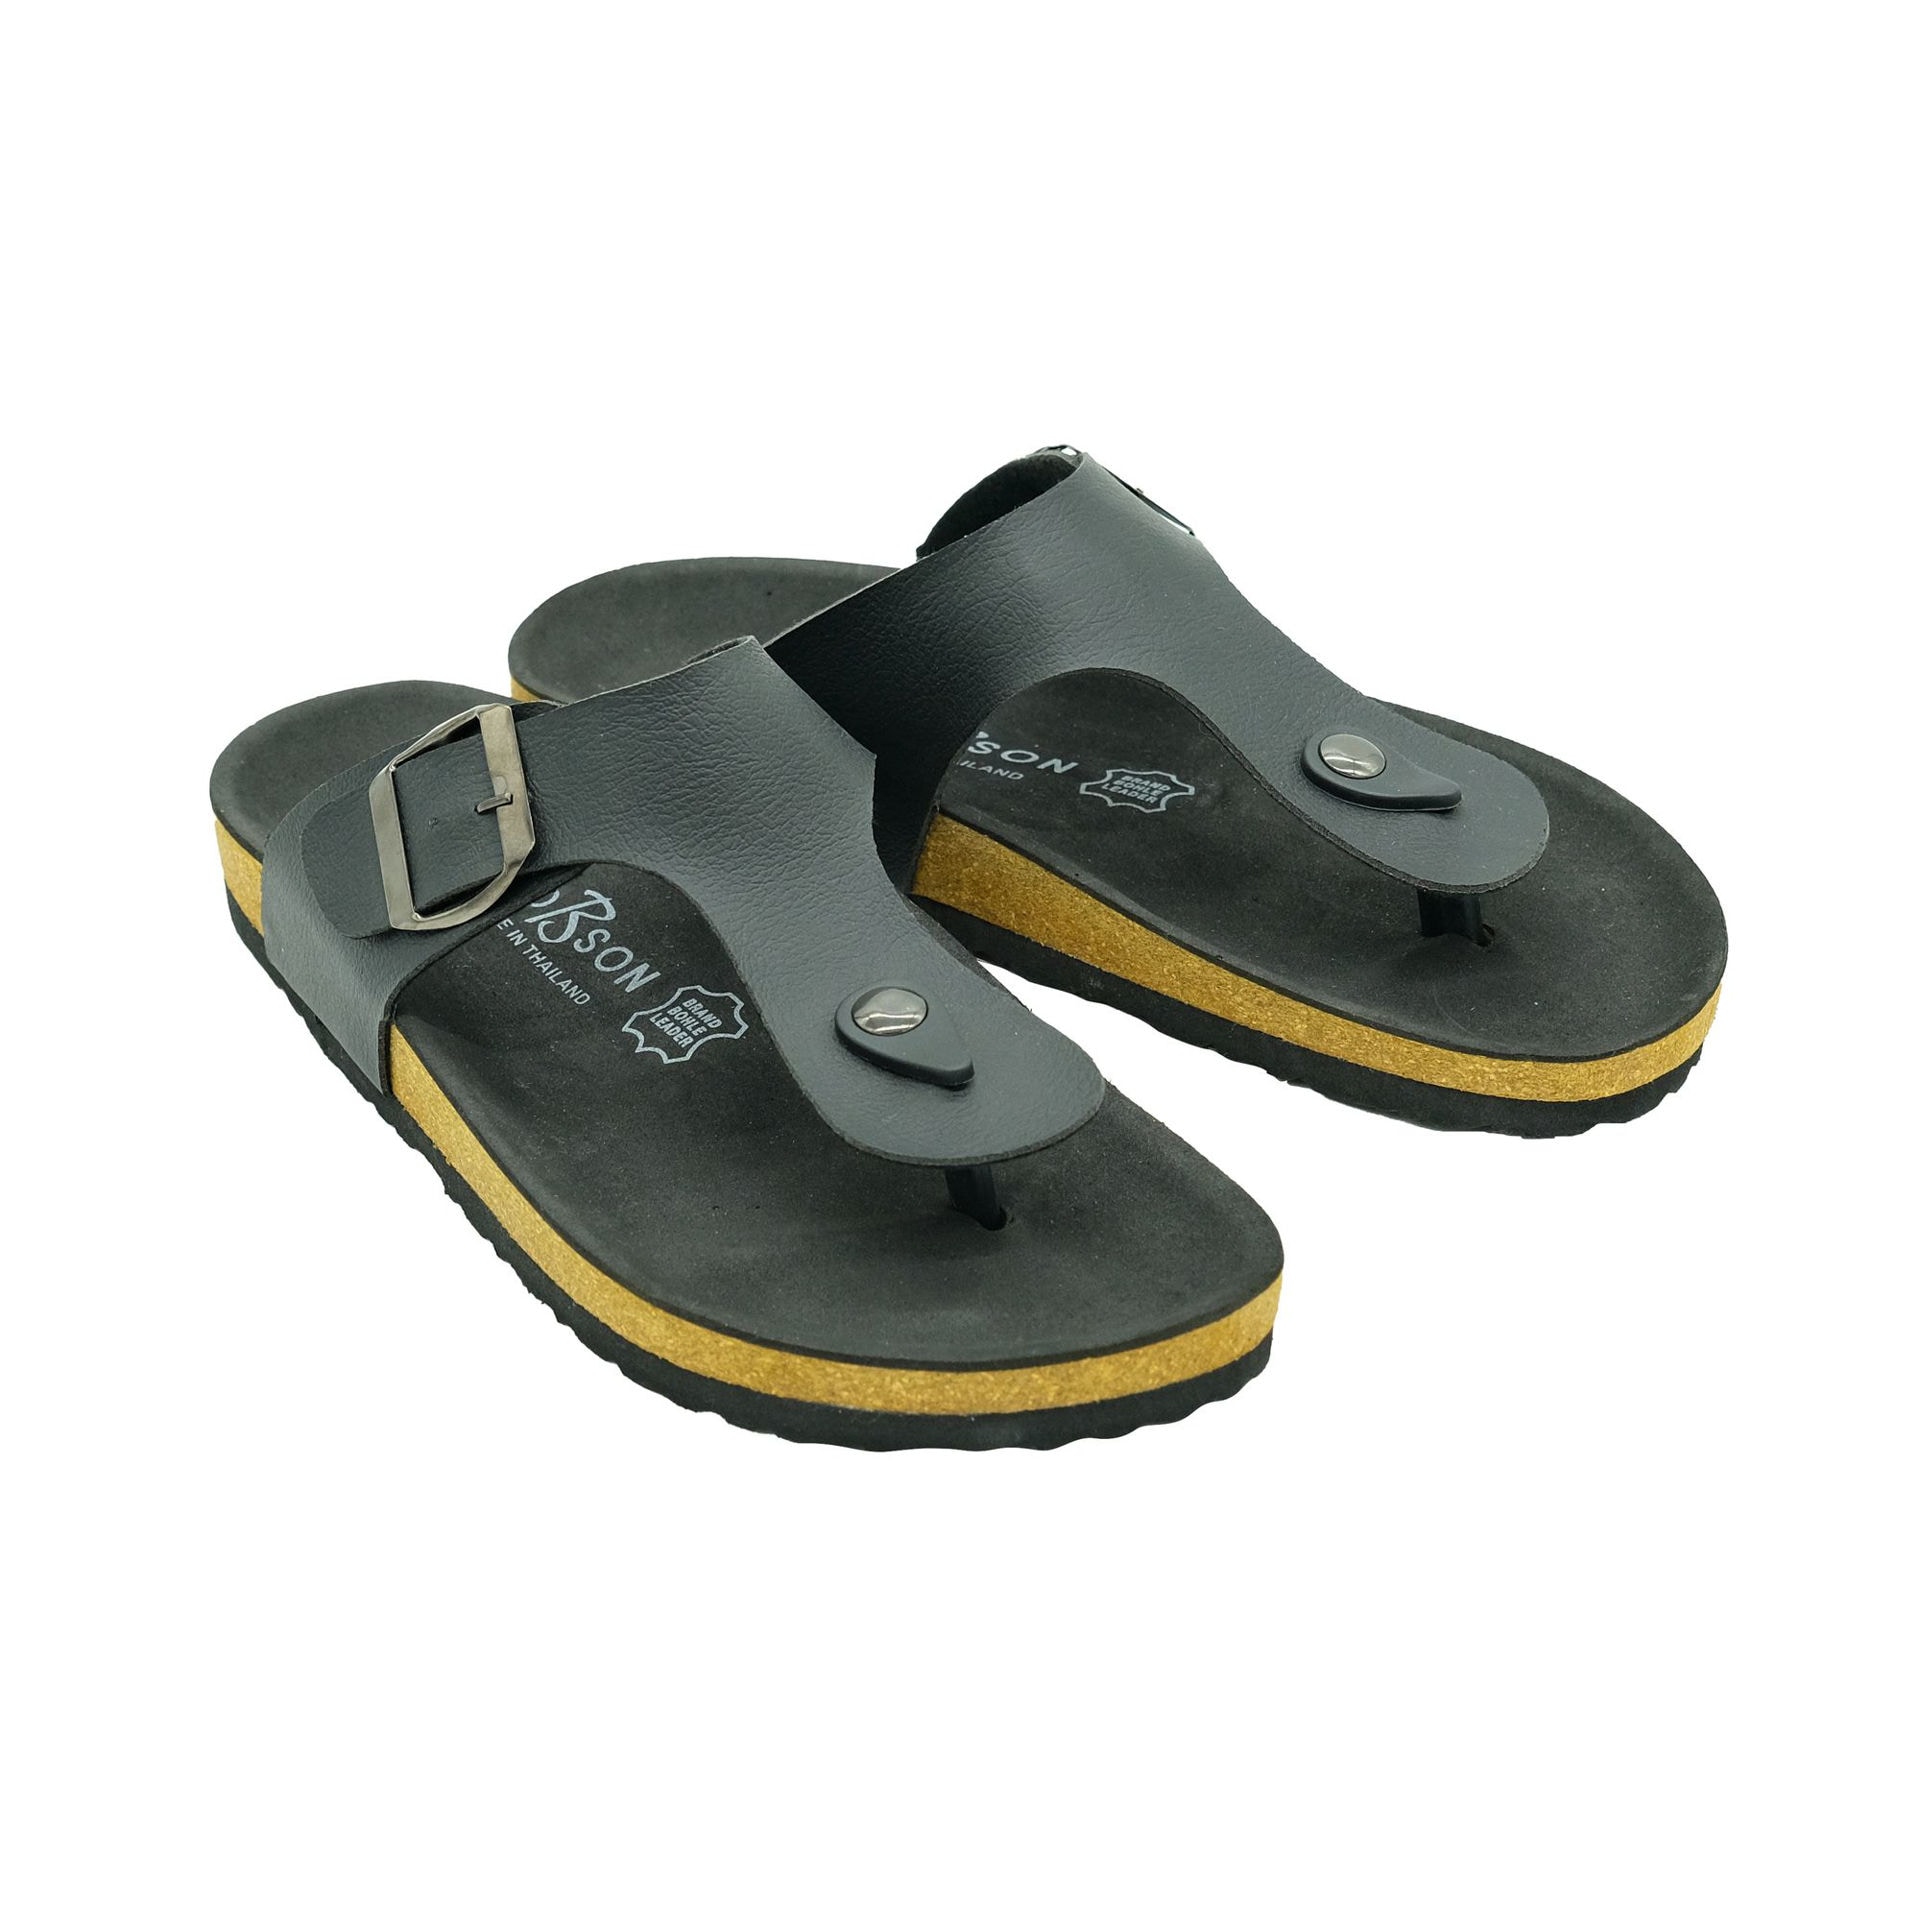 Fish shoes men beach slippers unisex plus size 32-47 family boys lovely  taste animal slippers man's summer shoes